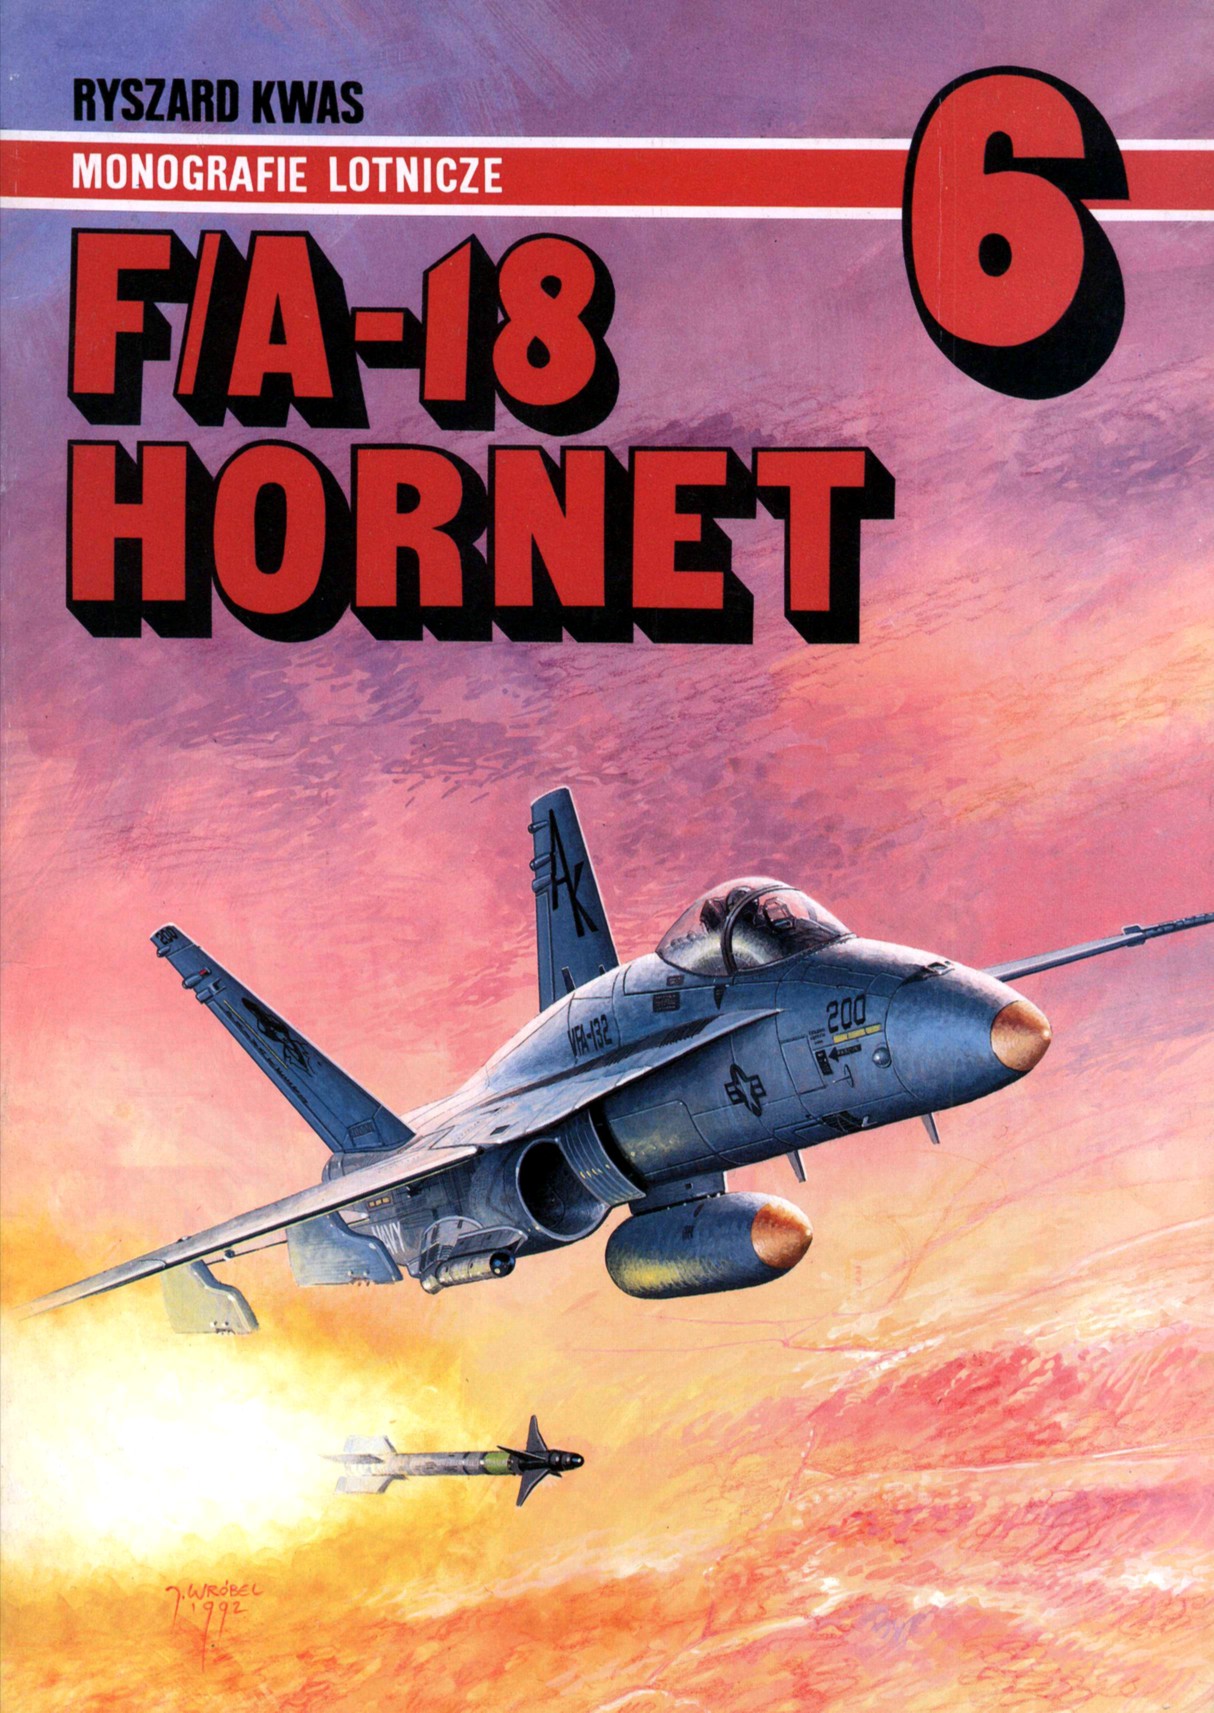 Monografie Lotnicze - ML-06-Kwas R.-FA-18 Hornet.jpg